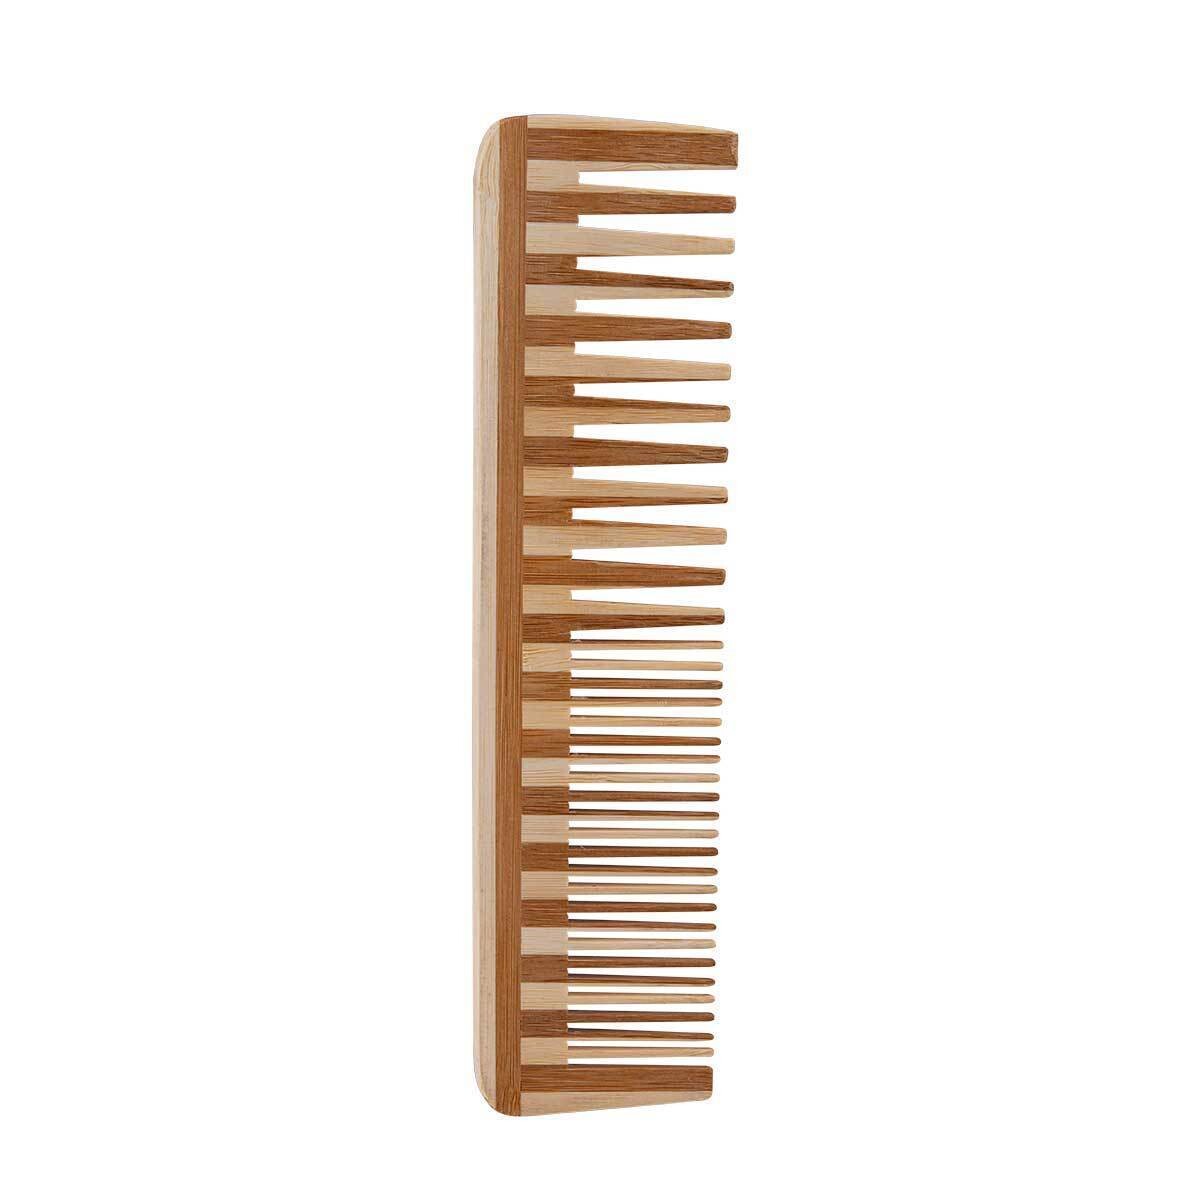 Relaxus Beauty Bamboo Detangler Comb